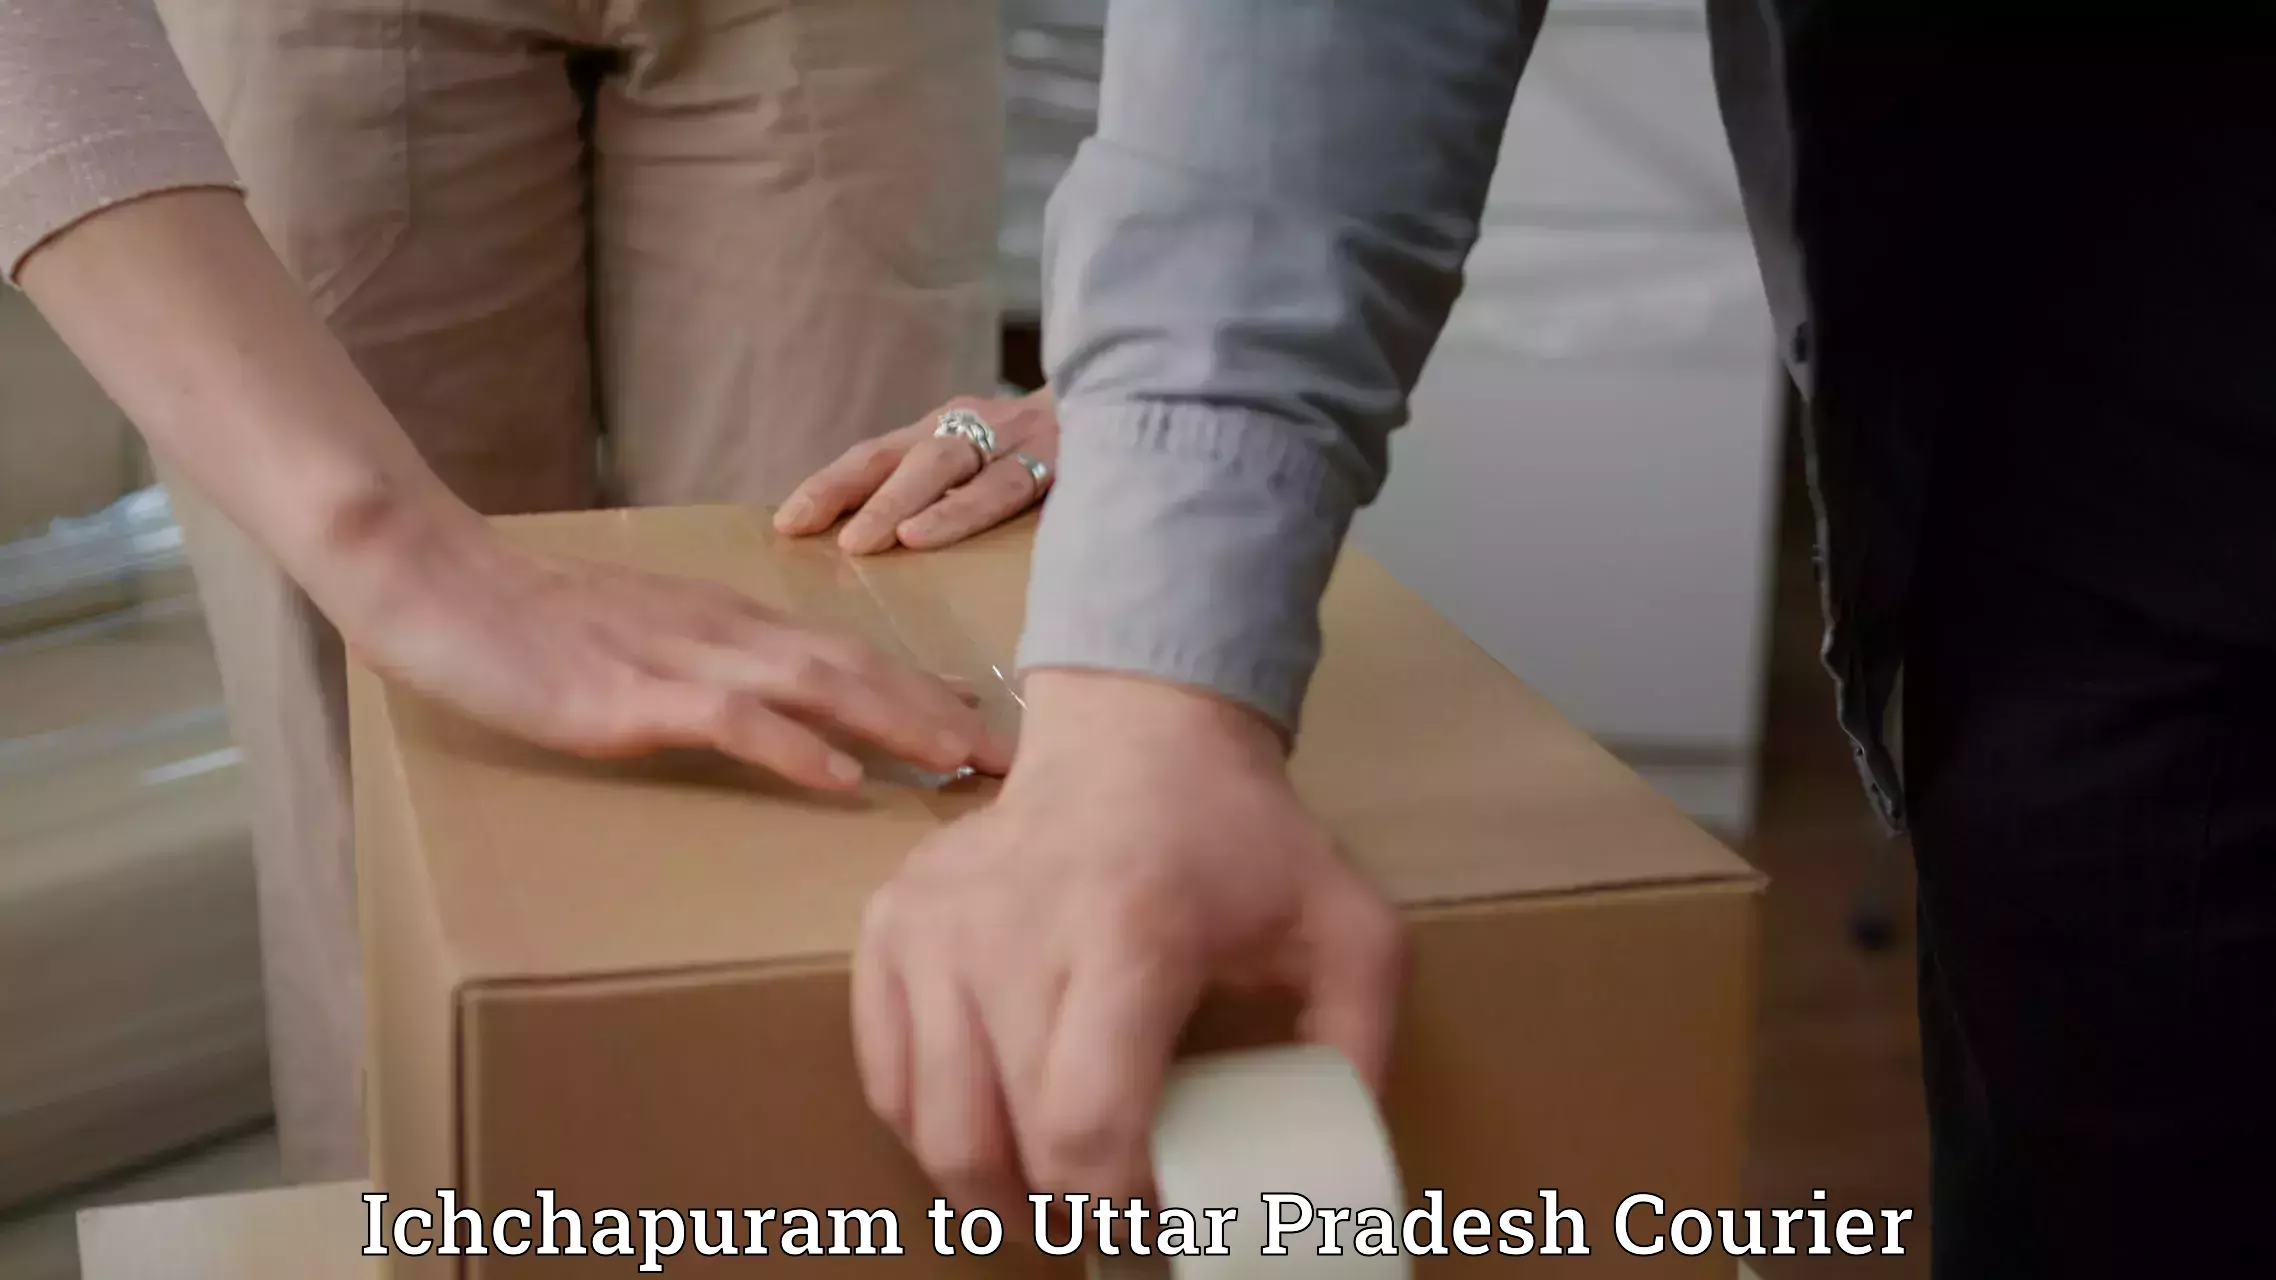 Courier services Ichchapuram to Shahjahanpur